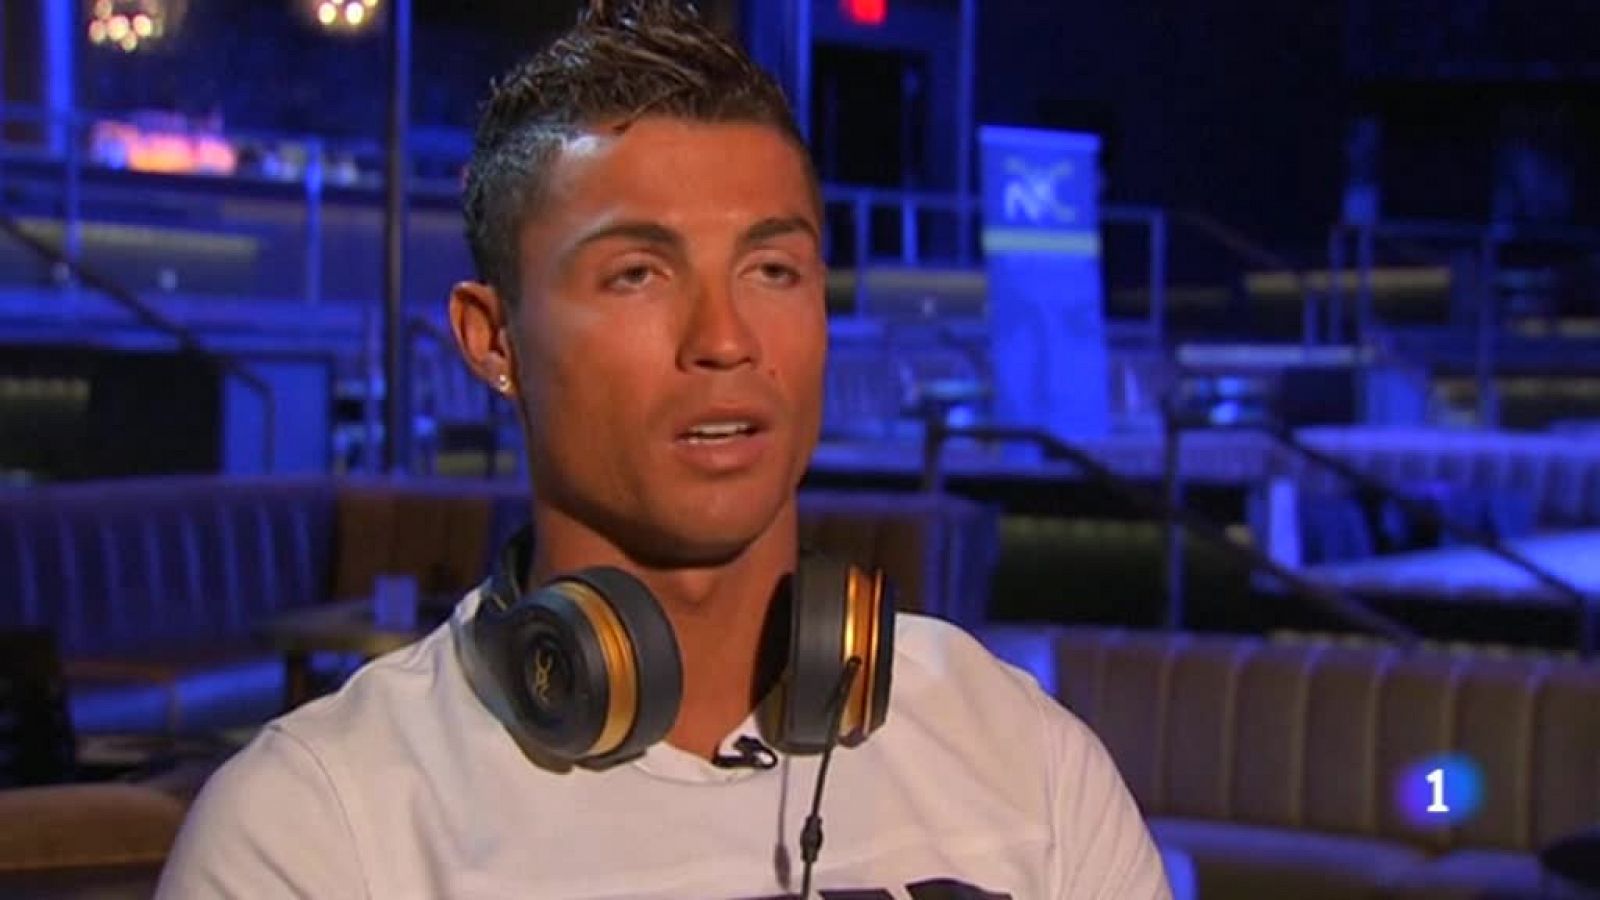 Telediario 1: Cristiano Ronaldo: "Espero conseguir títulos importantes con Benítez" | RTVE Play